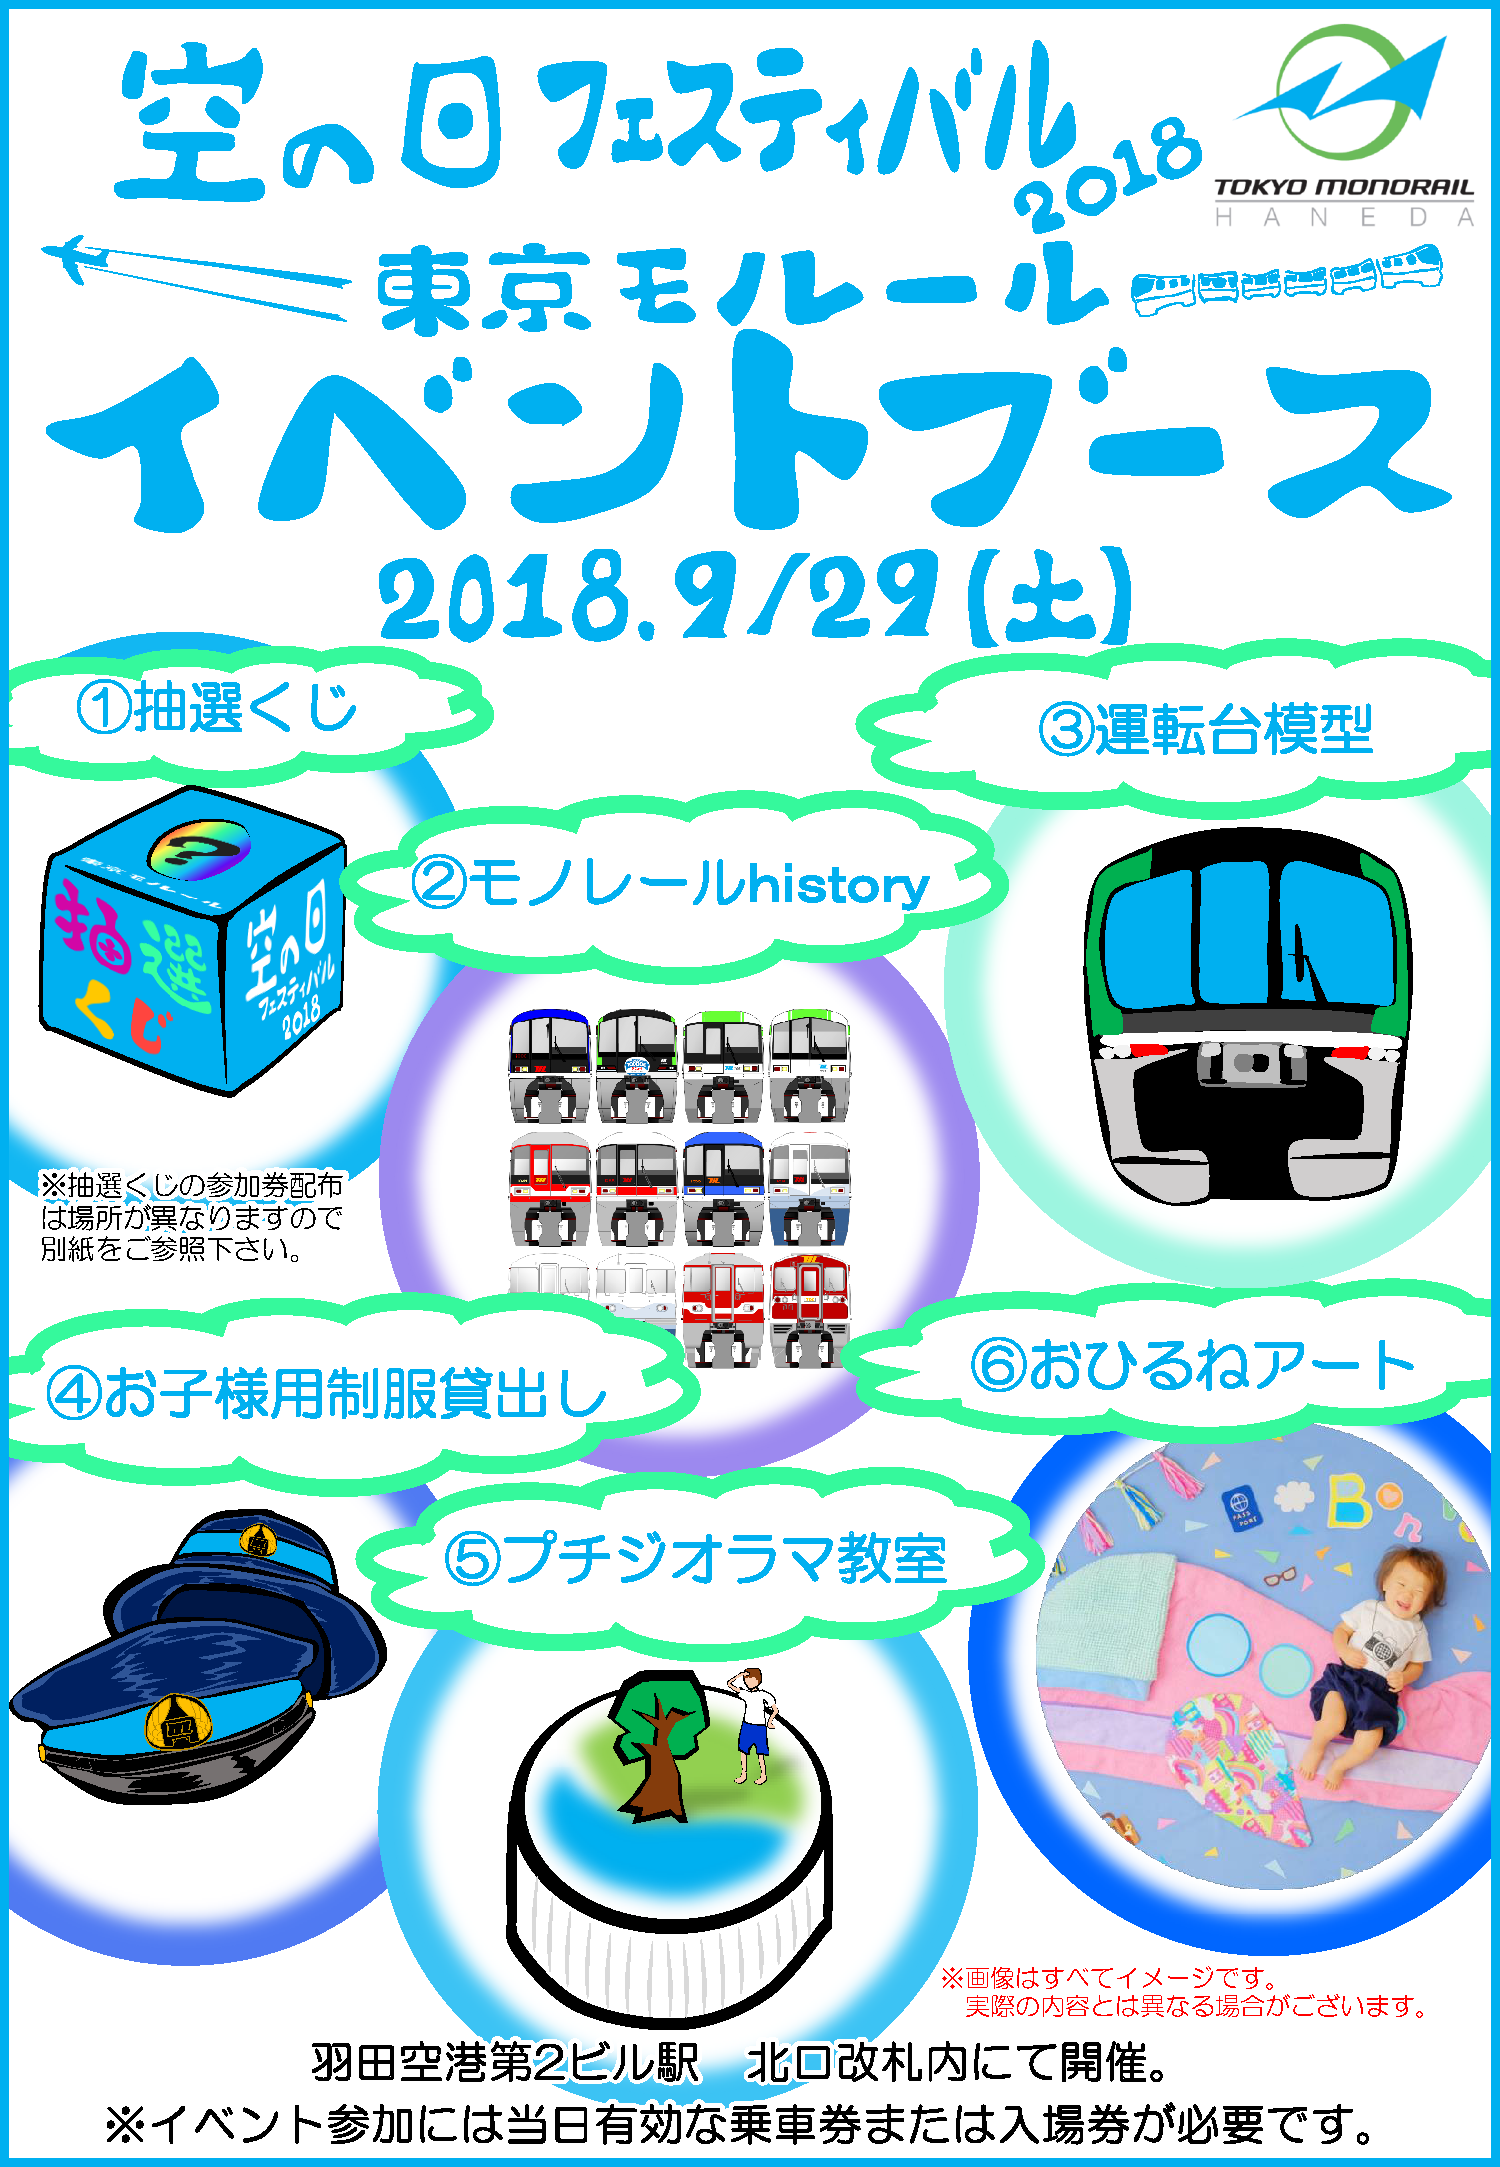 空の日フェスティバル18 東京モノレール イベントブース 開催について 東京モノレール株式会社のプレスリリース